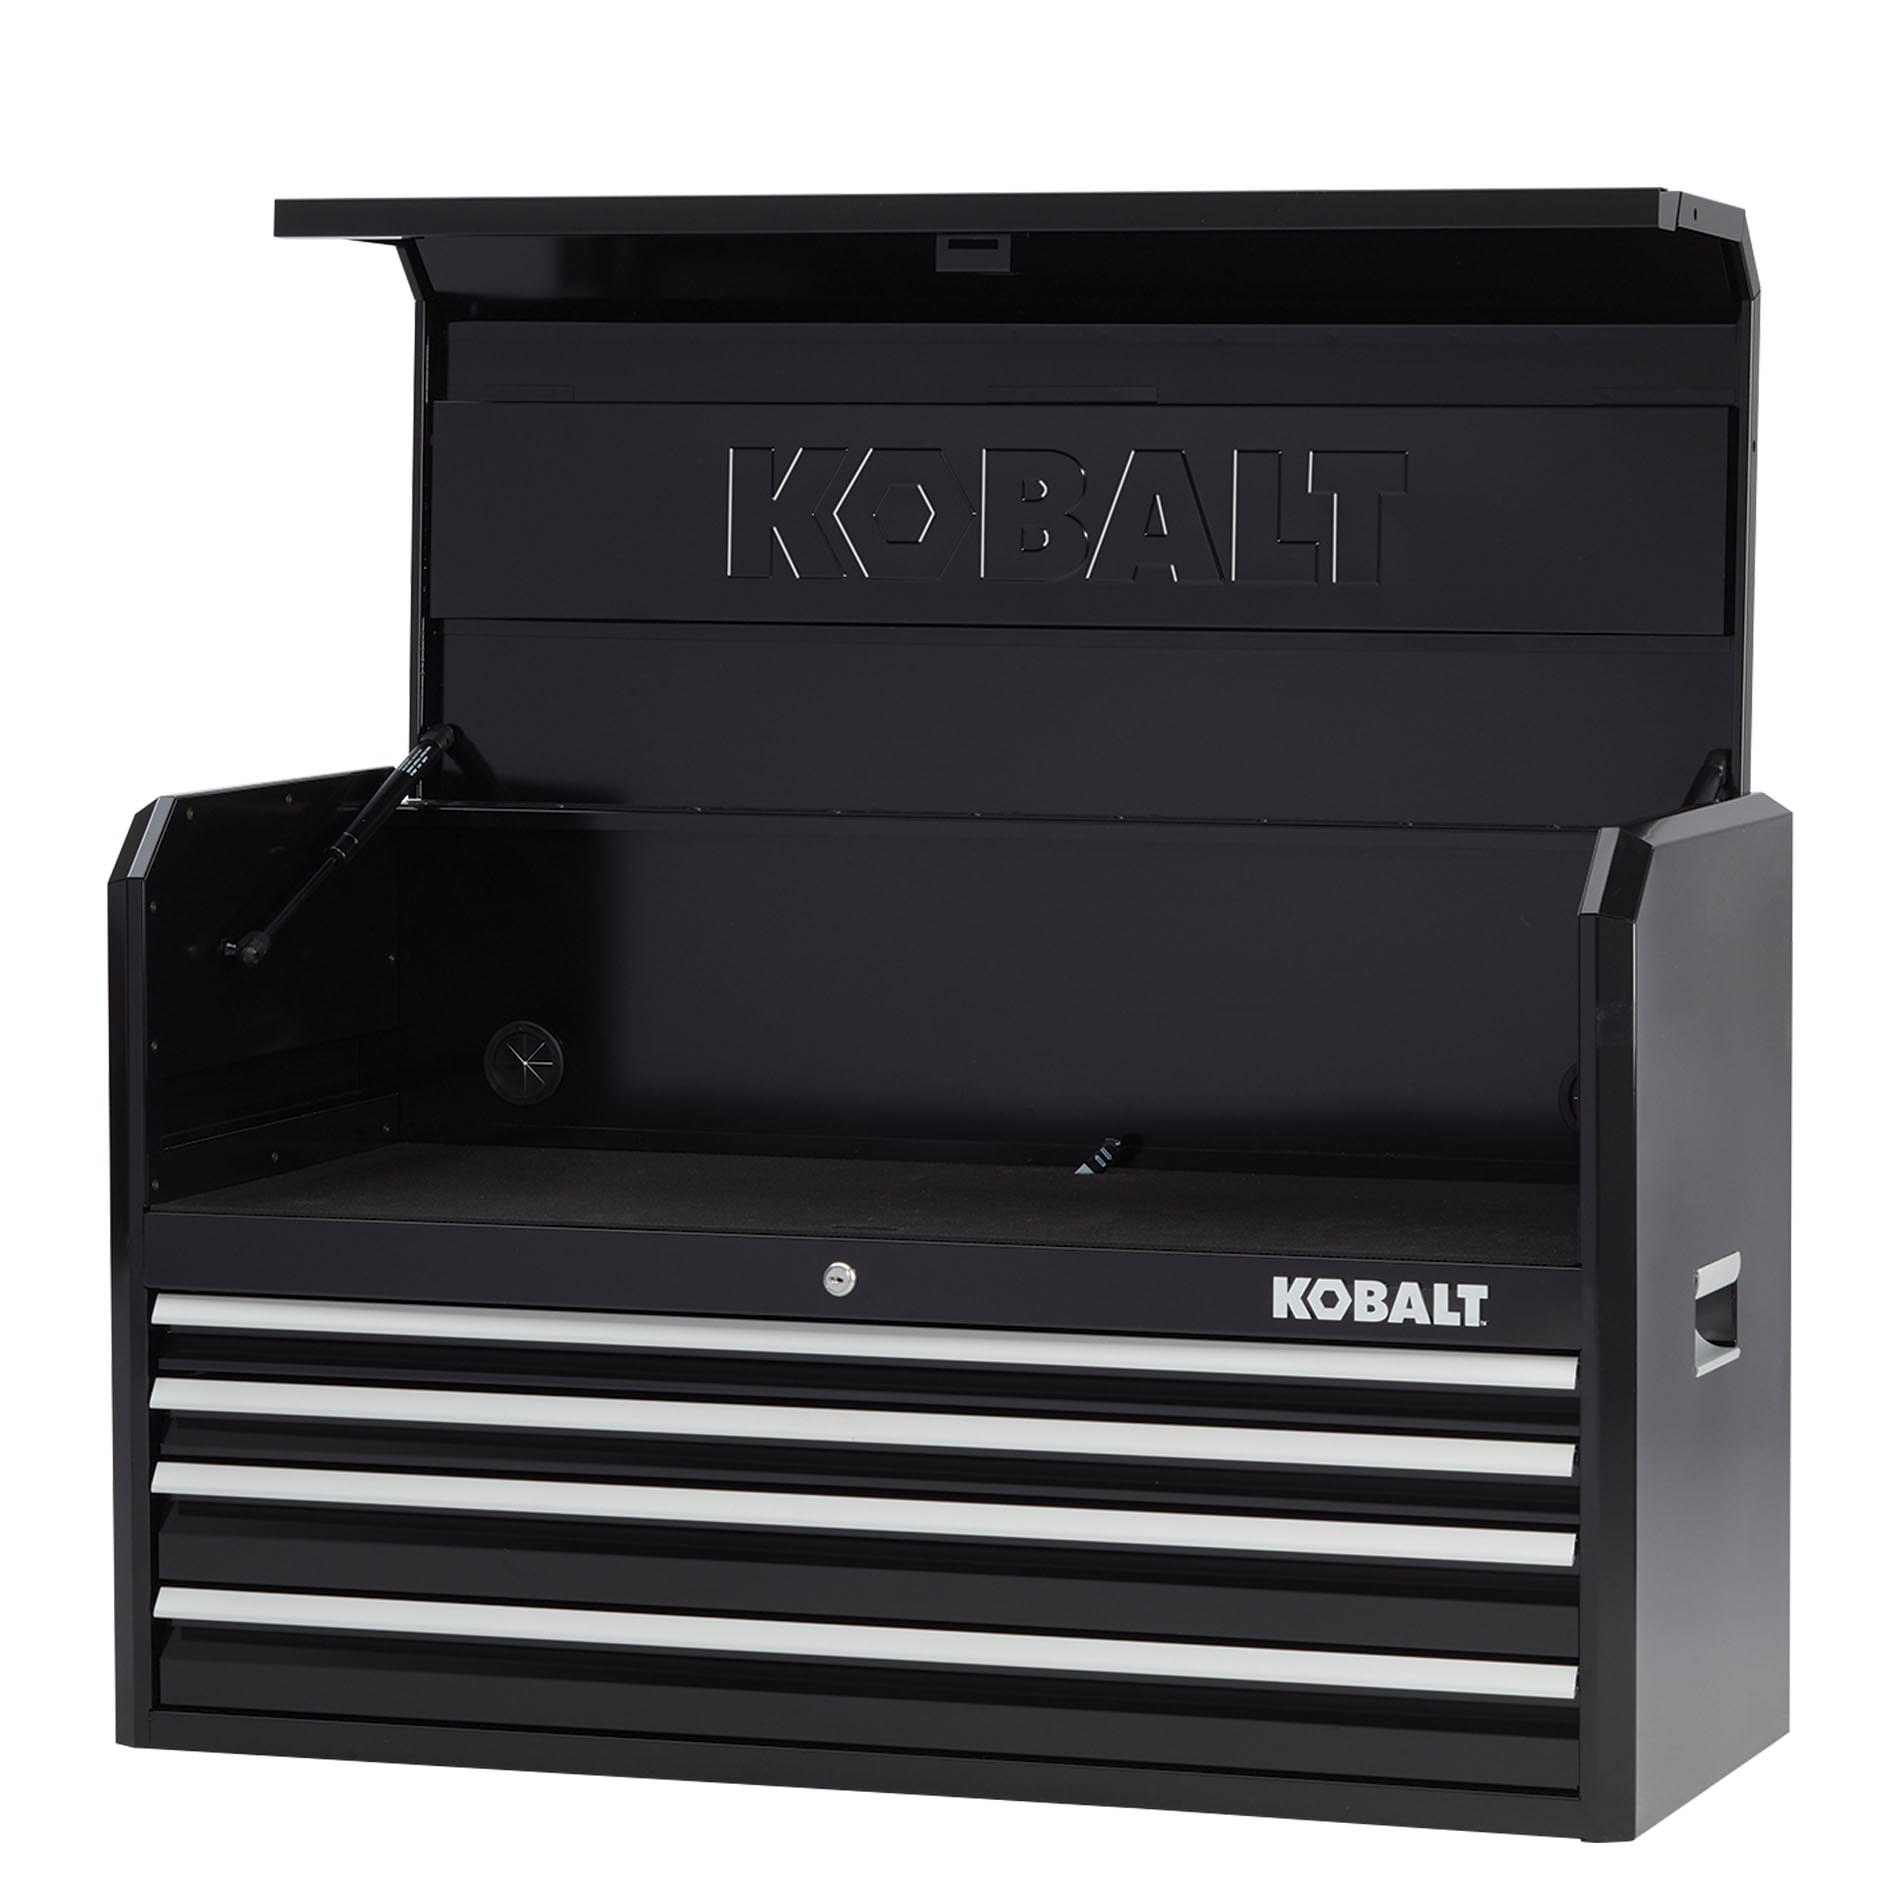 Kobalt 2000 Series 41in W x 24.5in H 4Drawer Steel Tool Chest (Black